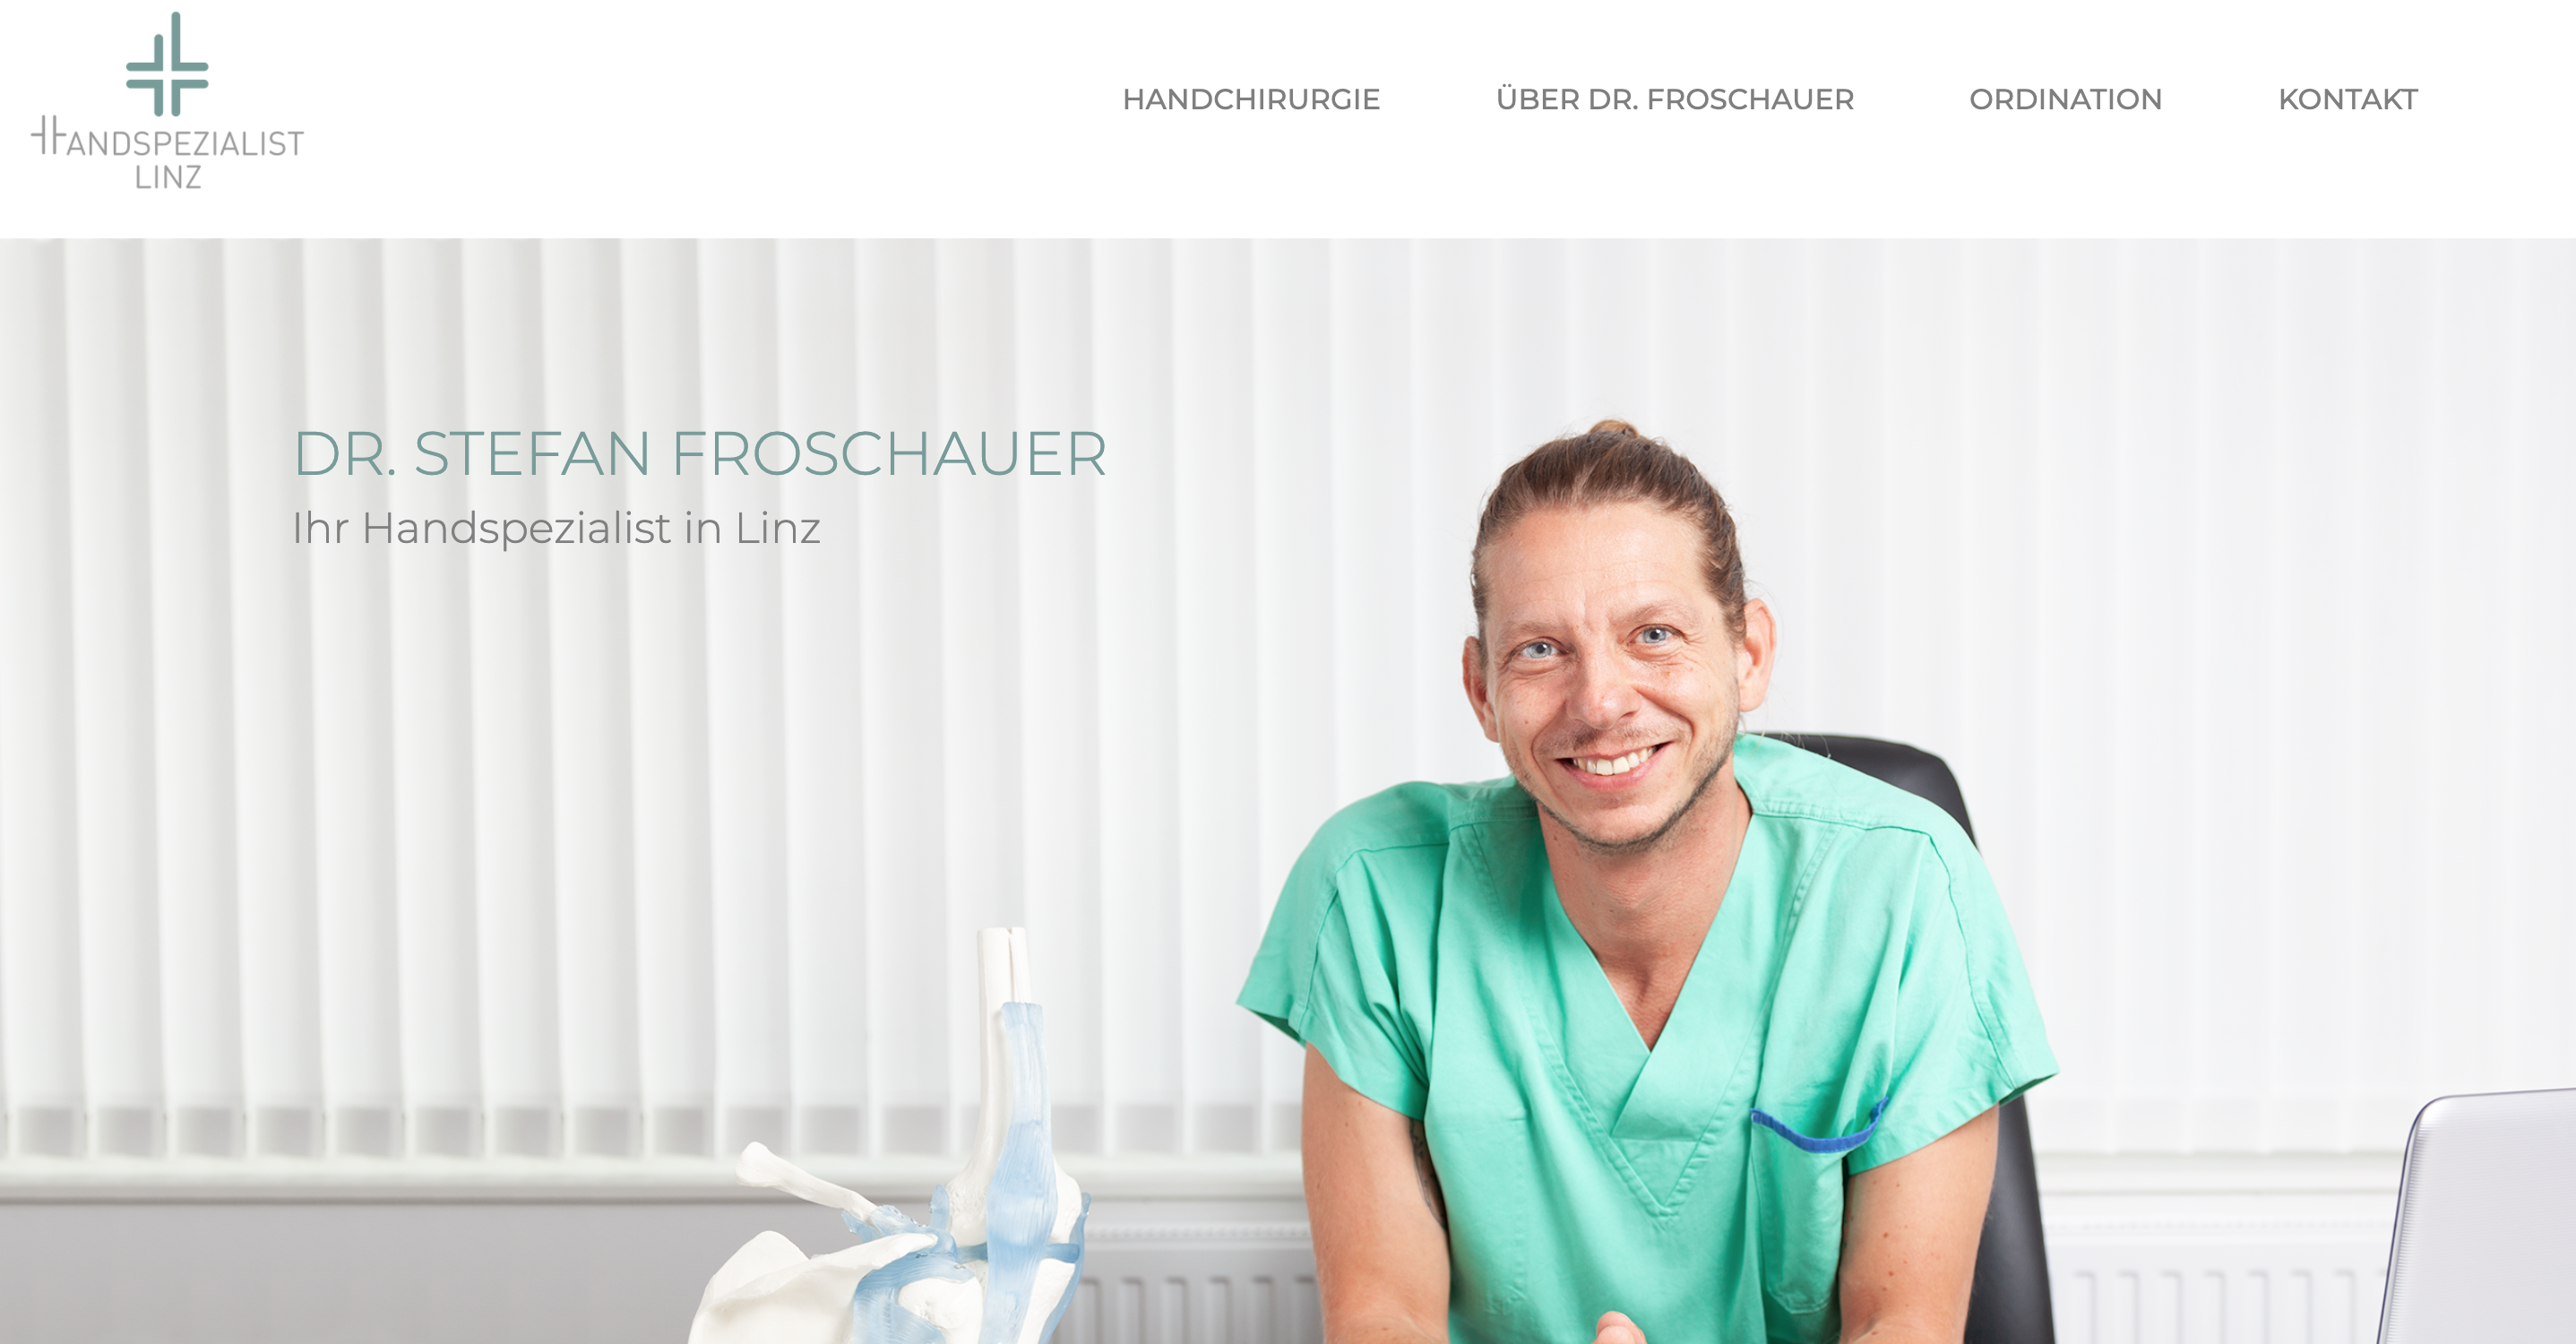 Das ist die Webseite von Dr. Stefan Froschauer